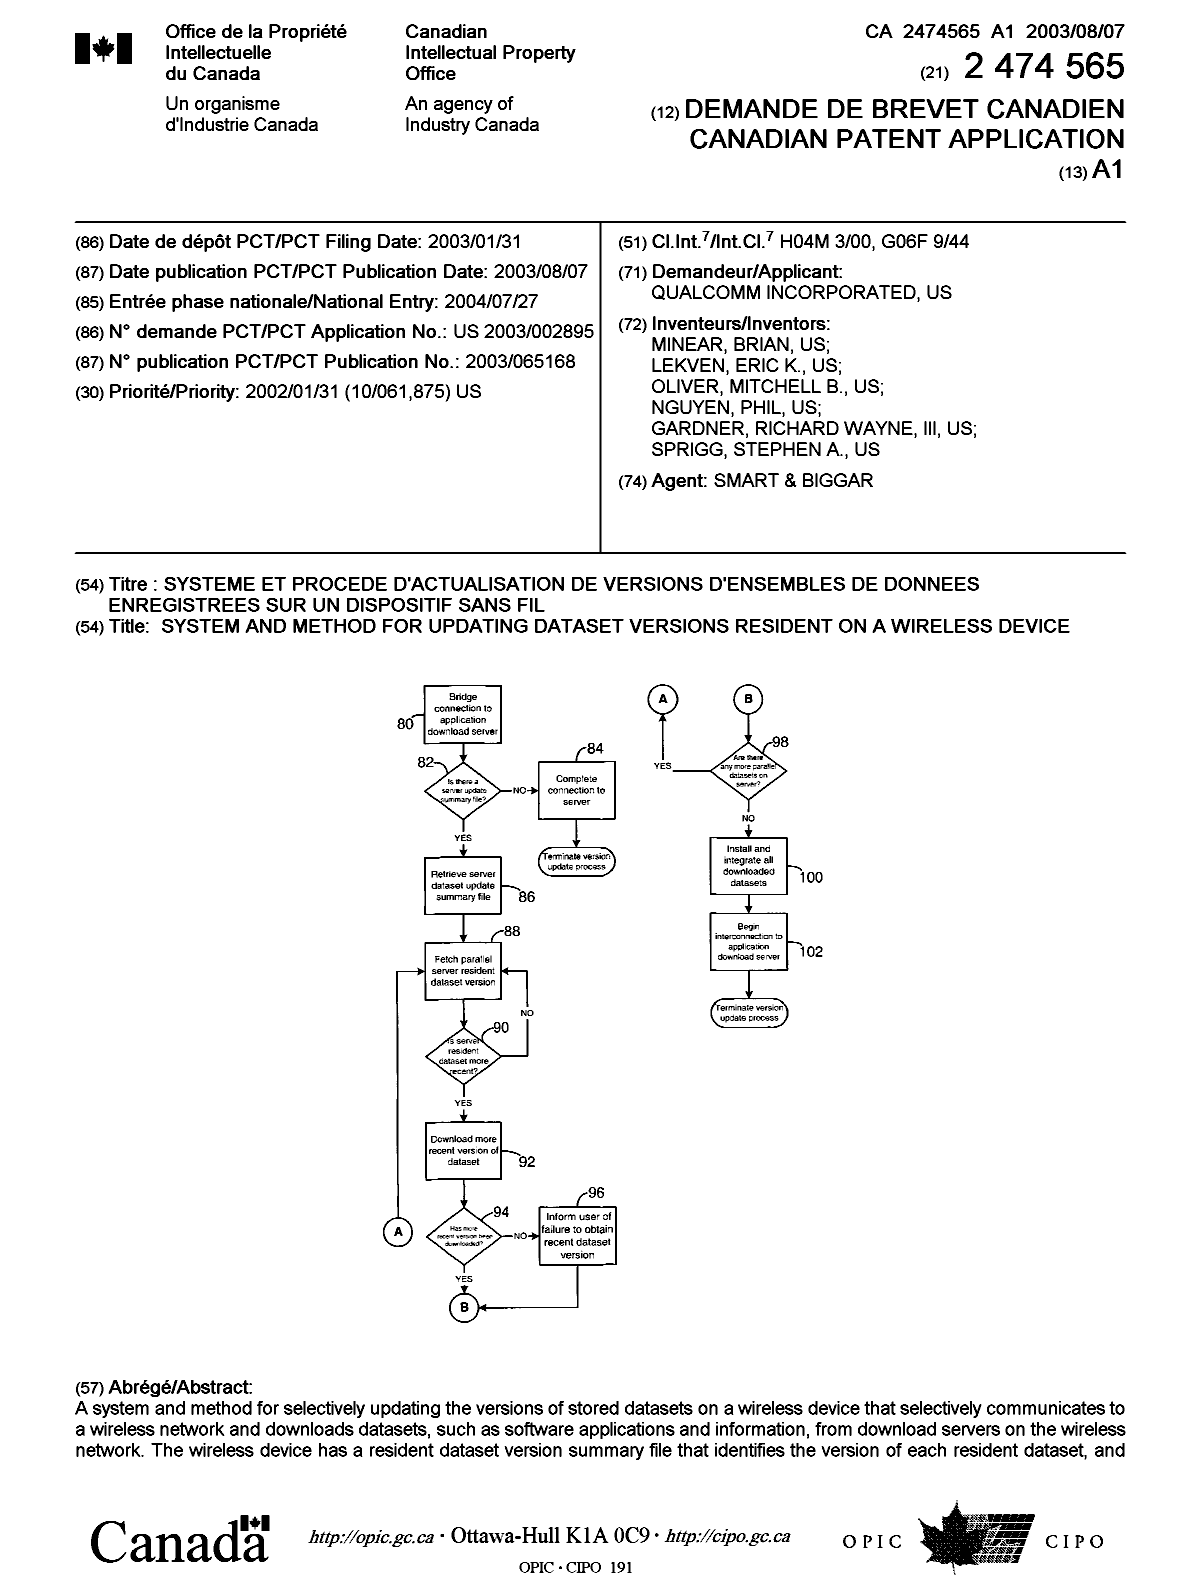 Document de brevet canadien 2474565. Page couverture 20040929. Image 1 de 2